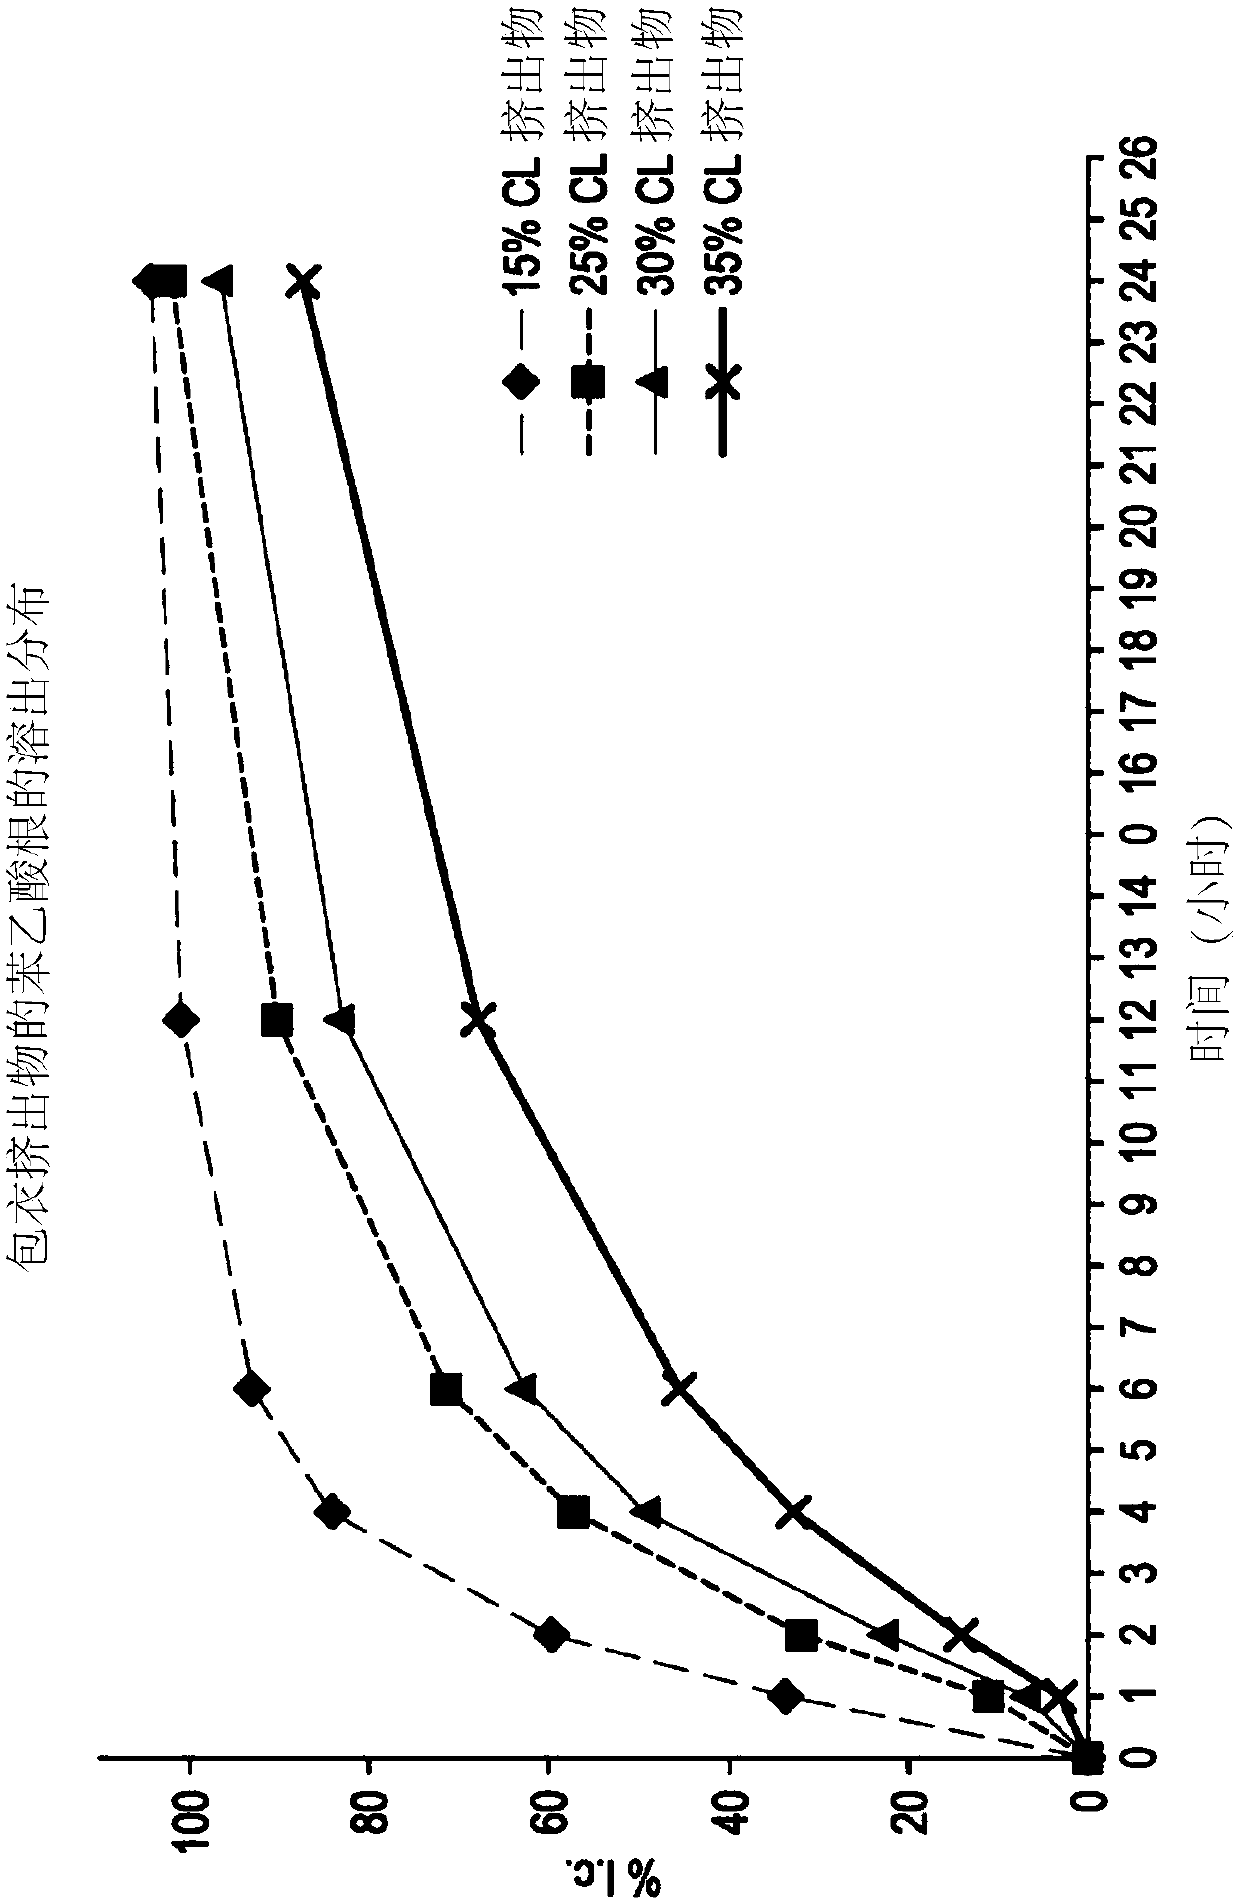 Formulations of L-ornithine phenylacetate